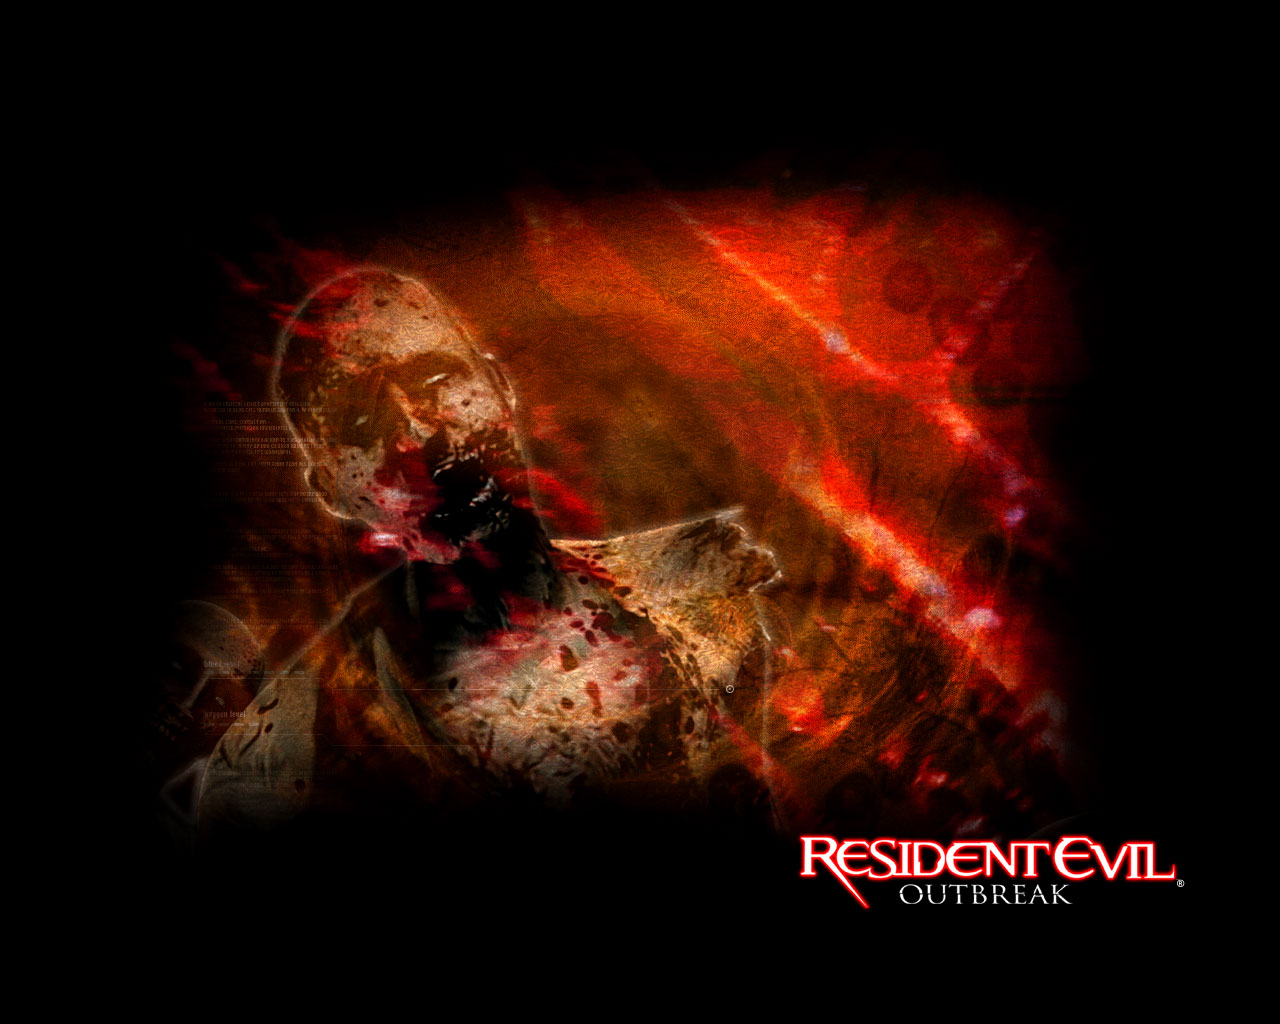 Resident_Evil_Outbreak_05_1280x1024.jpg